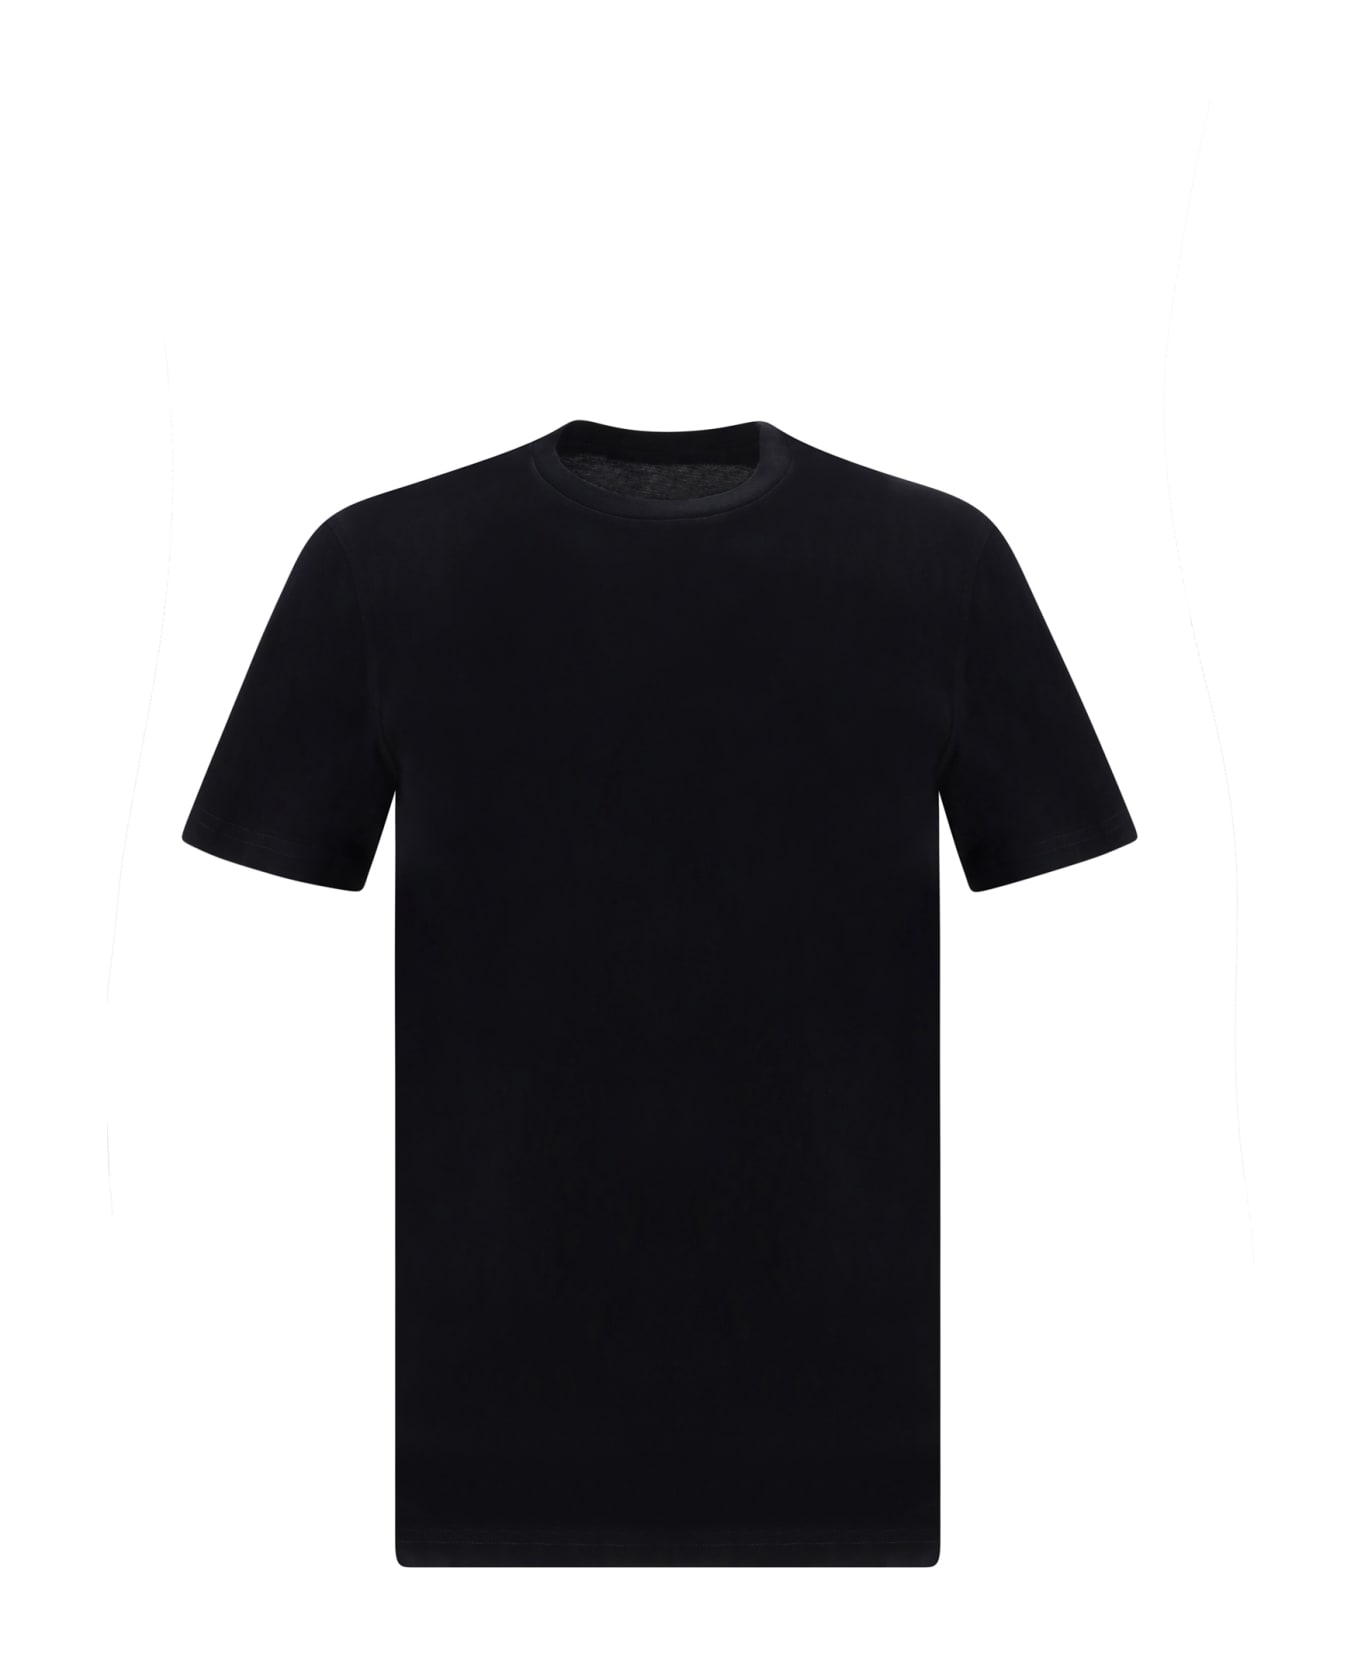 Jil Sander T-shirt - 001